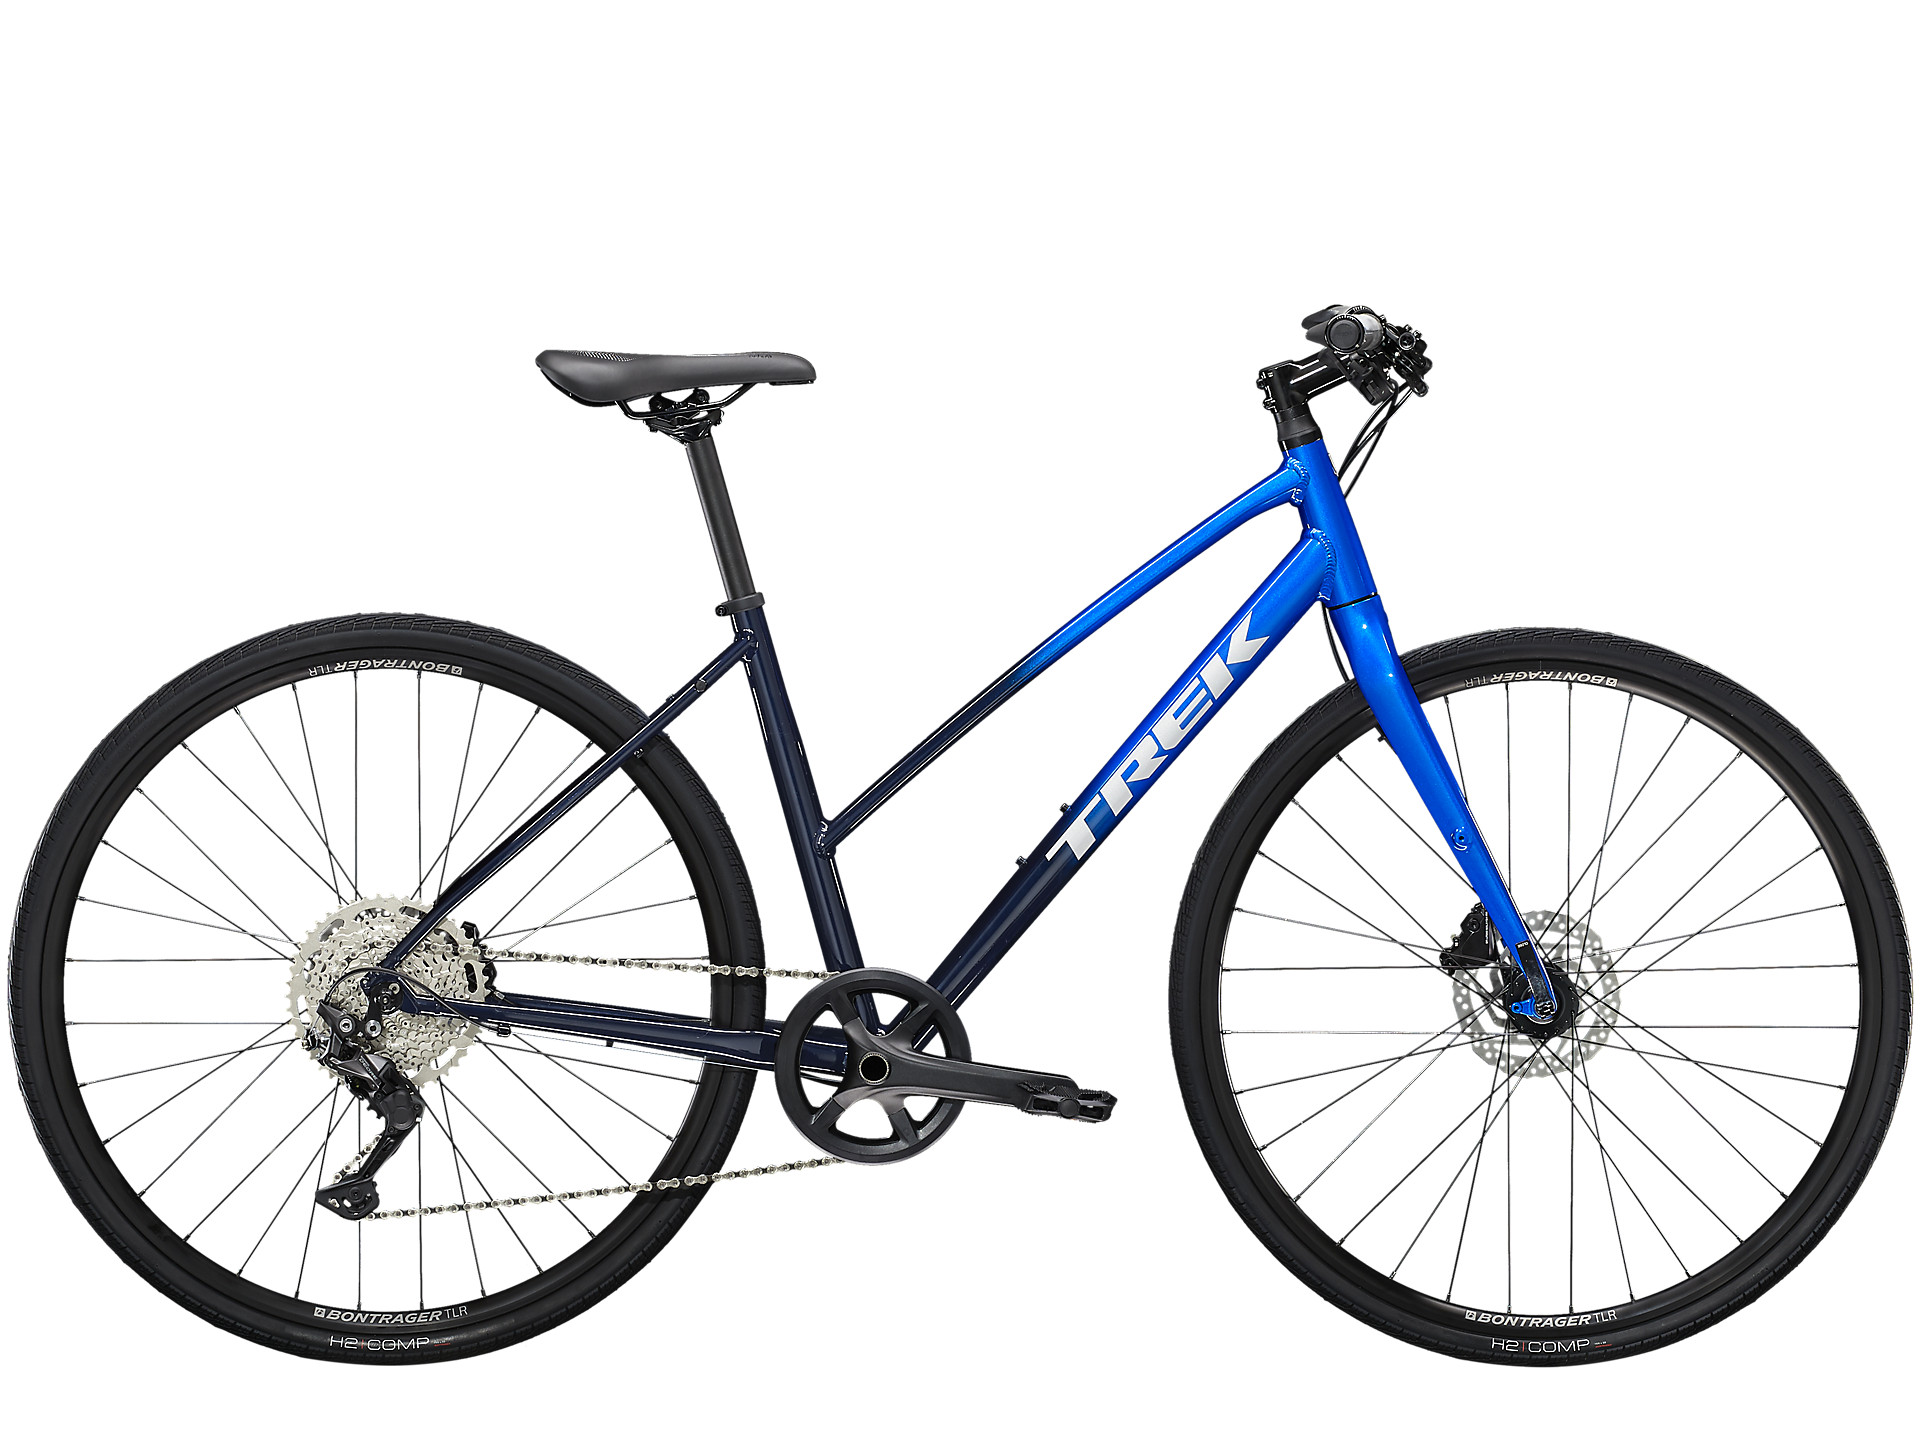 Black/blue Trek FX 3 Disc step-through hybrid bike for women.